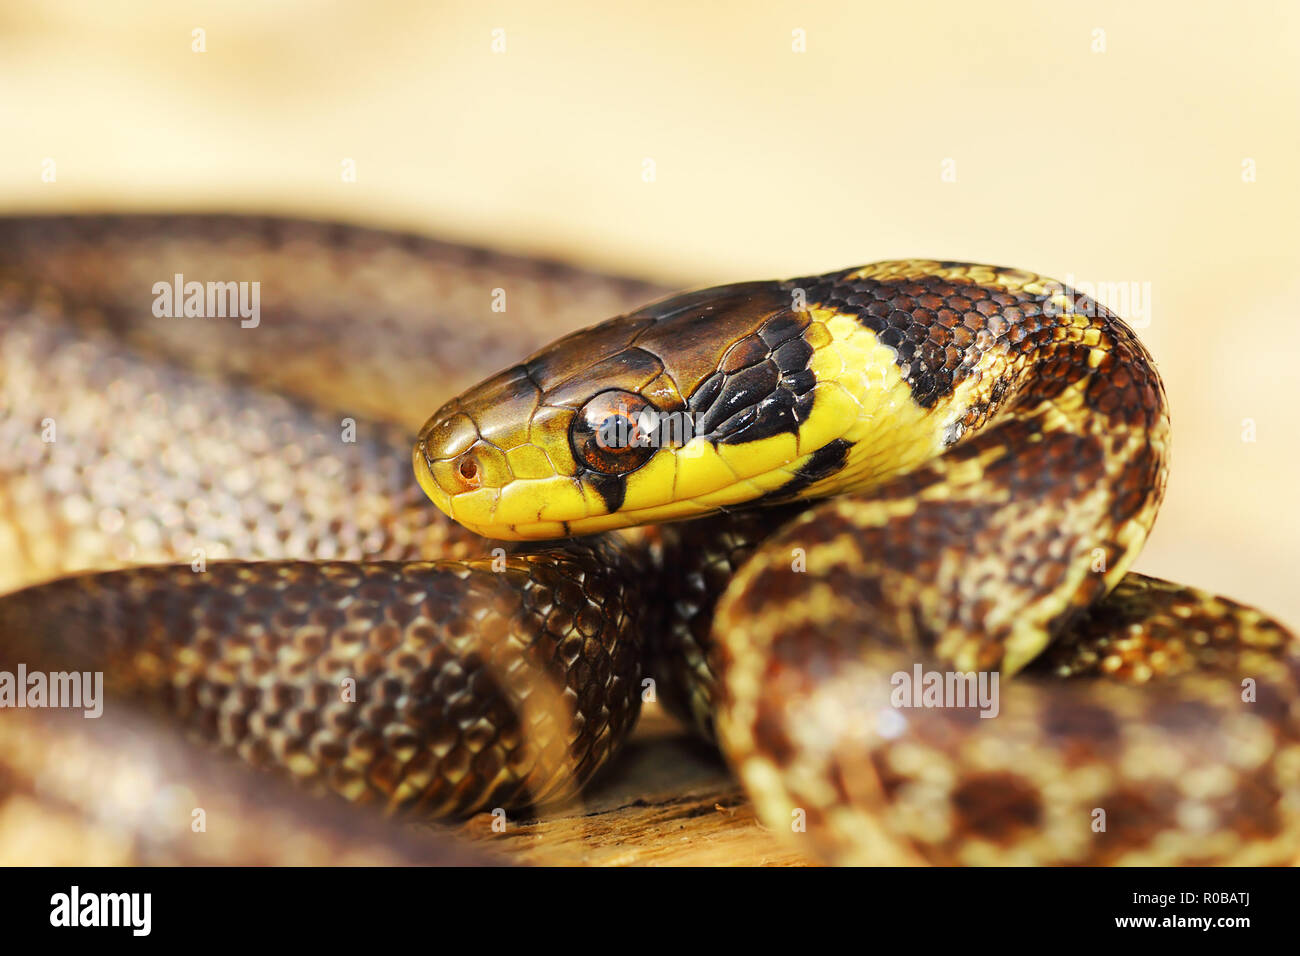 Retrato de colorida serpiente aesculapian menores ( Zamenis longissimus ) Foto de stock